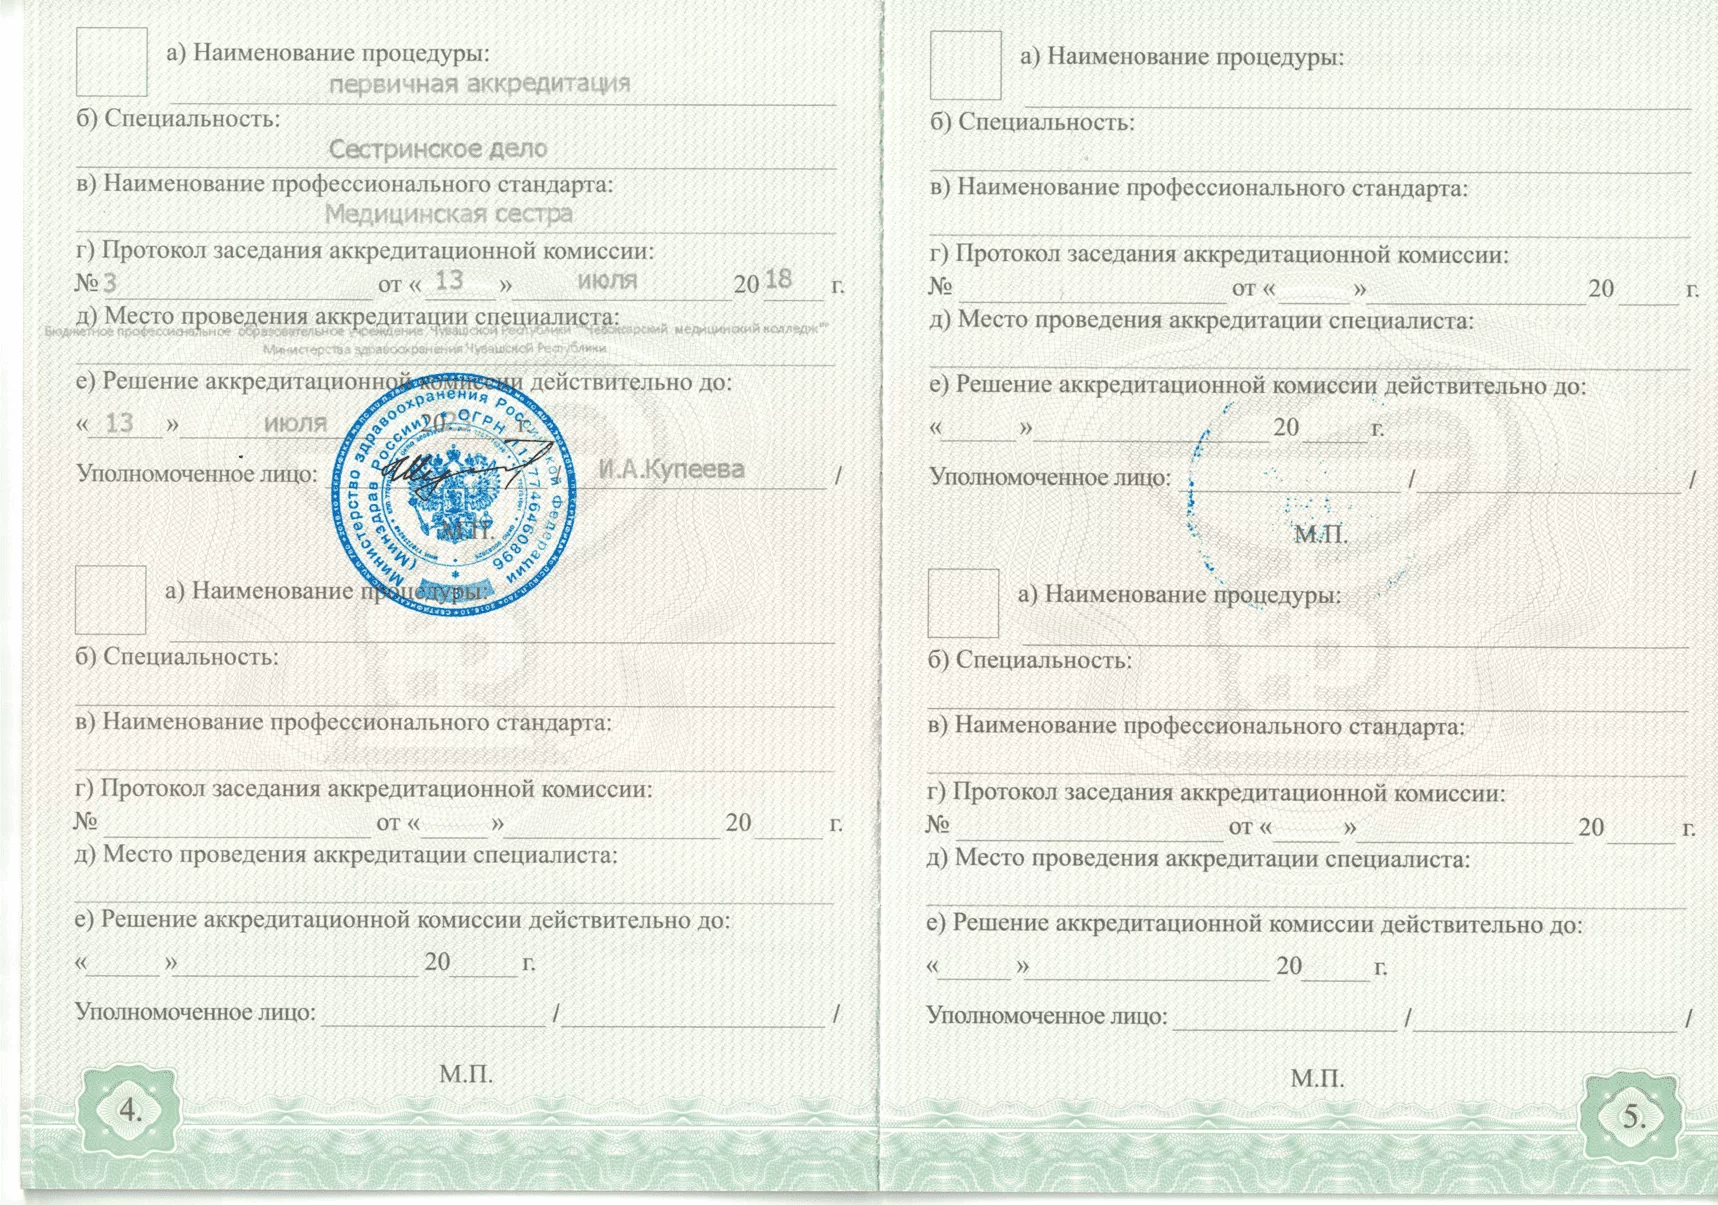 Диплом и сертификат  Михеева Анастасия Владимировна